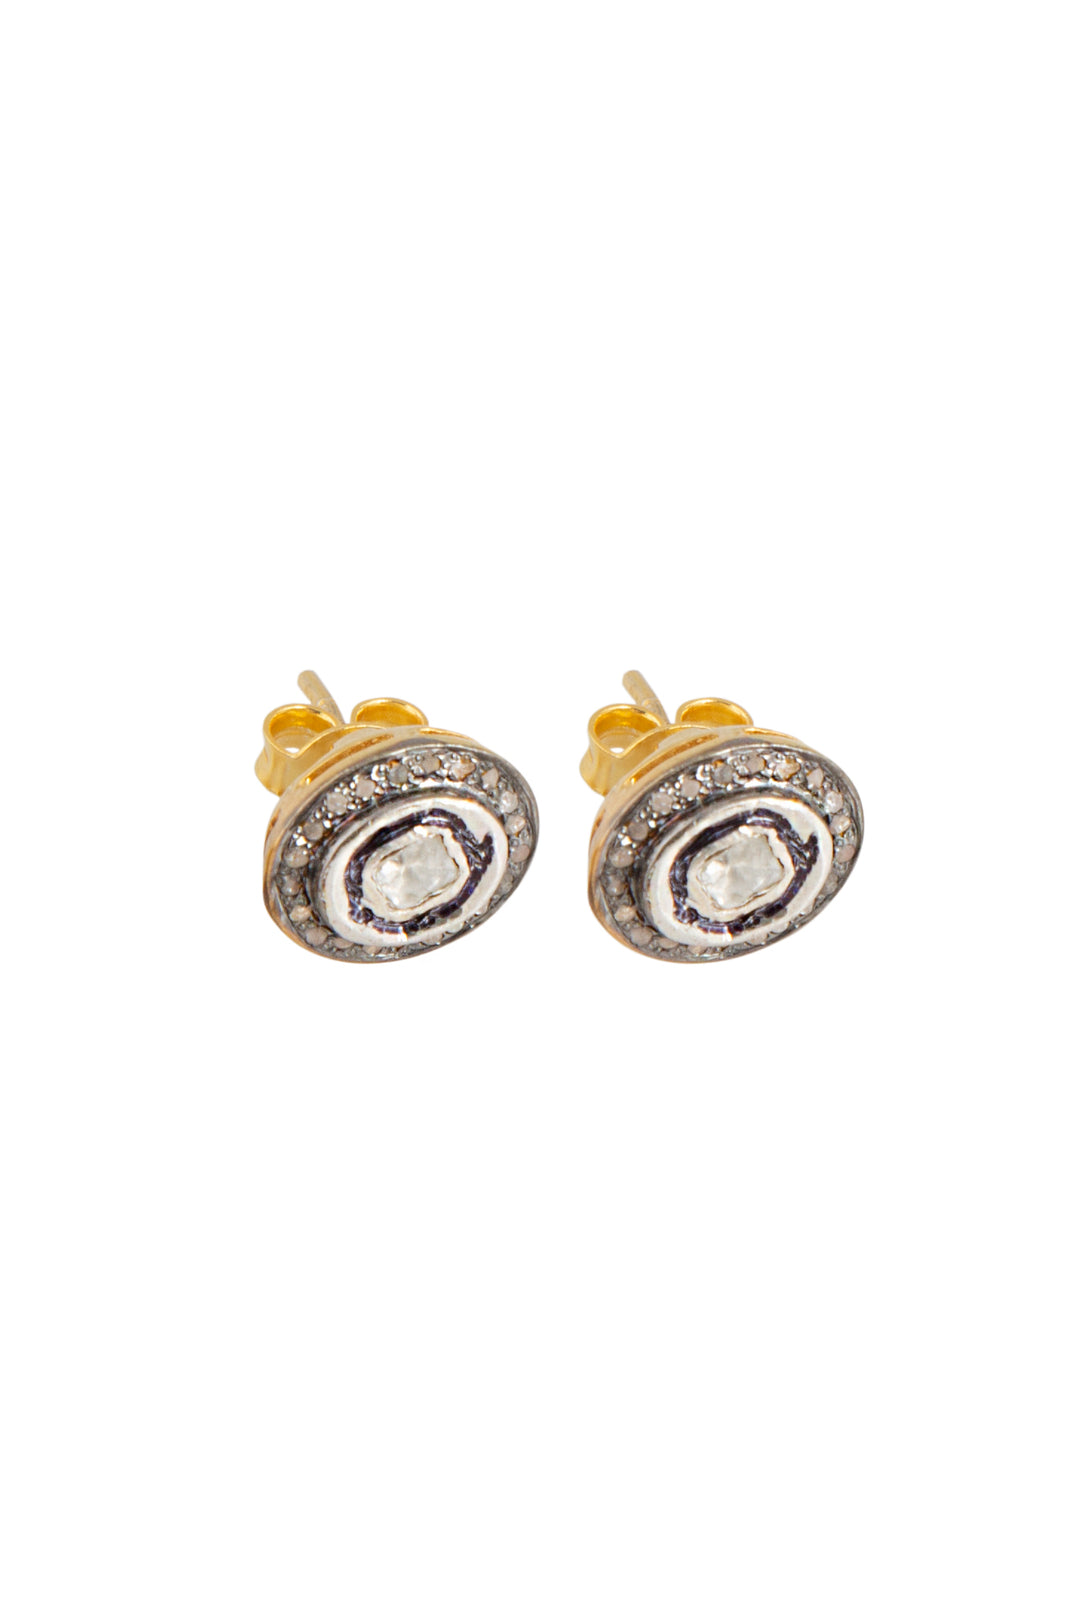 Oval earrings with uncut diamonds